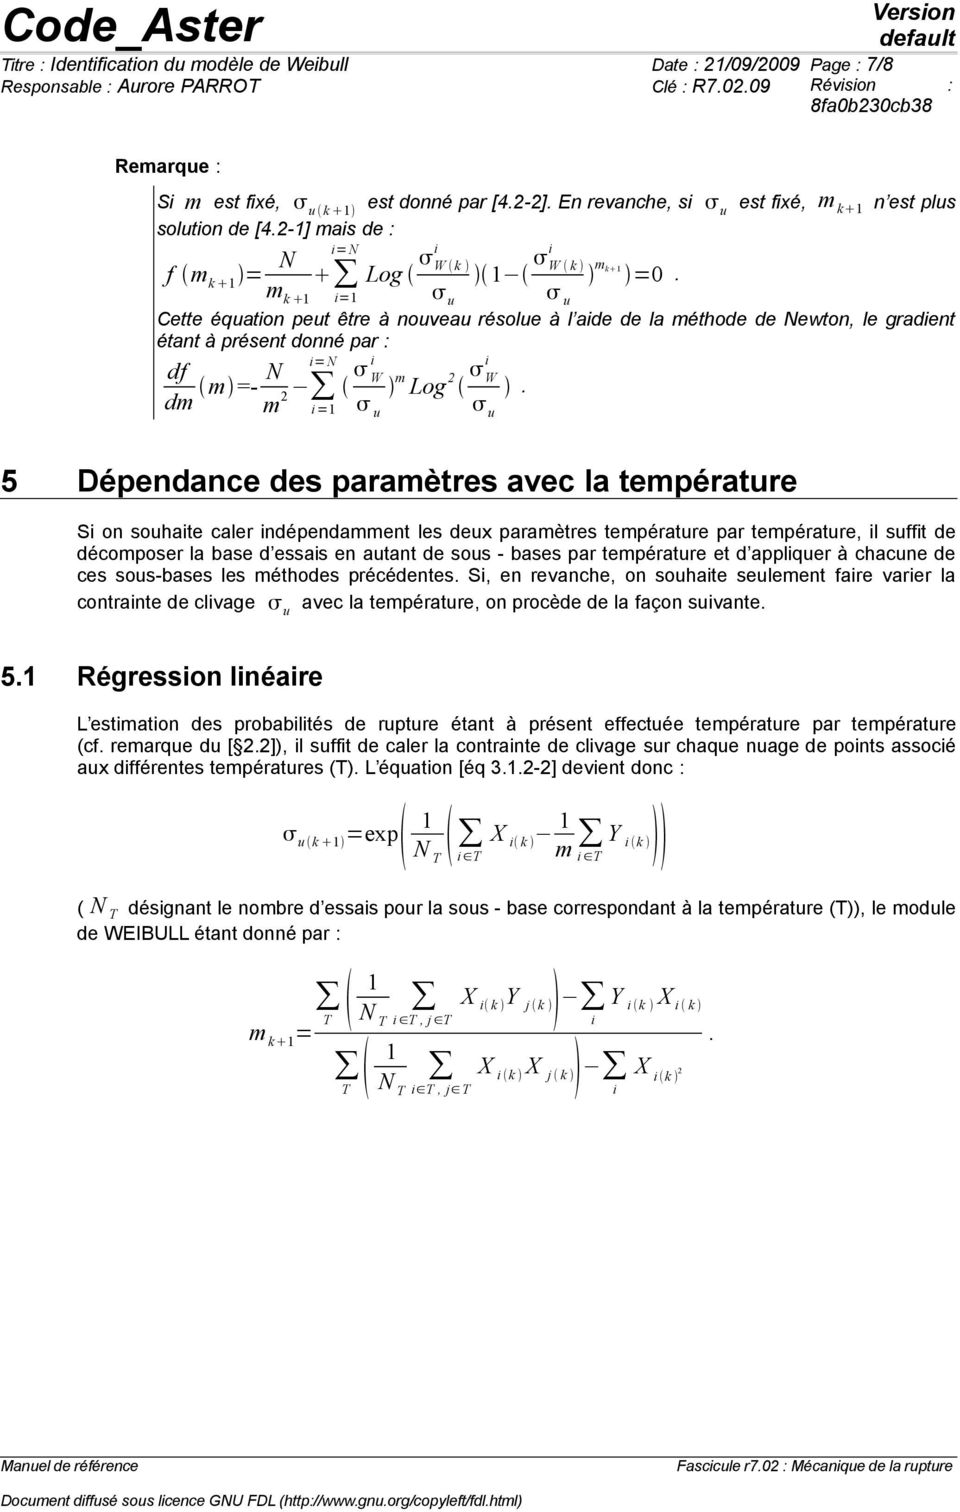 df dm m =- N = N m W m Log 2 W 2 = u u 5 Dépendance des paramètres avec la température S on souhate caler ndépendamment les deux paramètres température par température, l sufft de décomposer la base